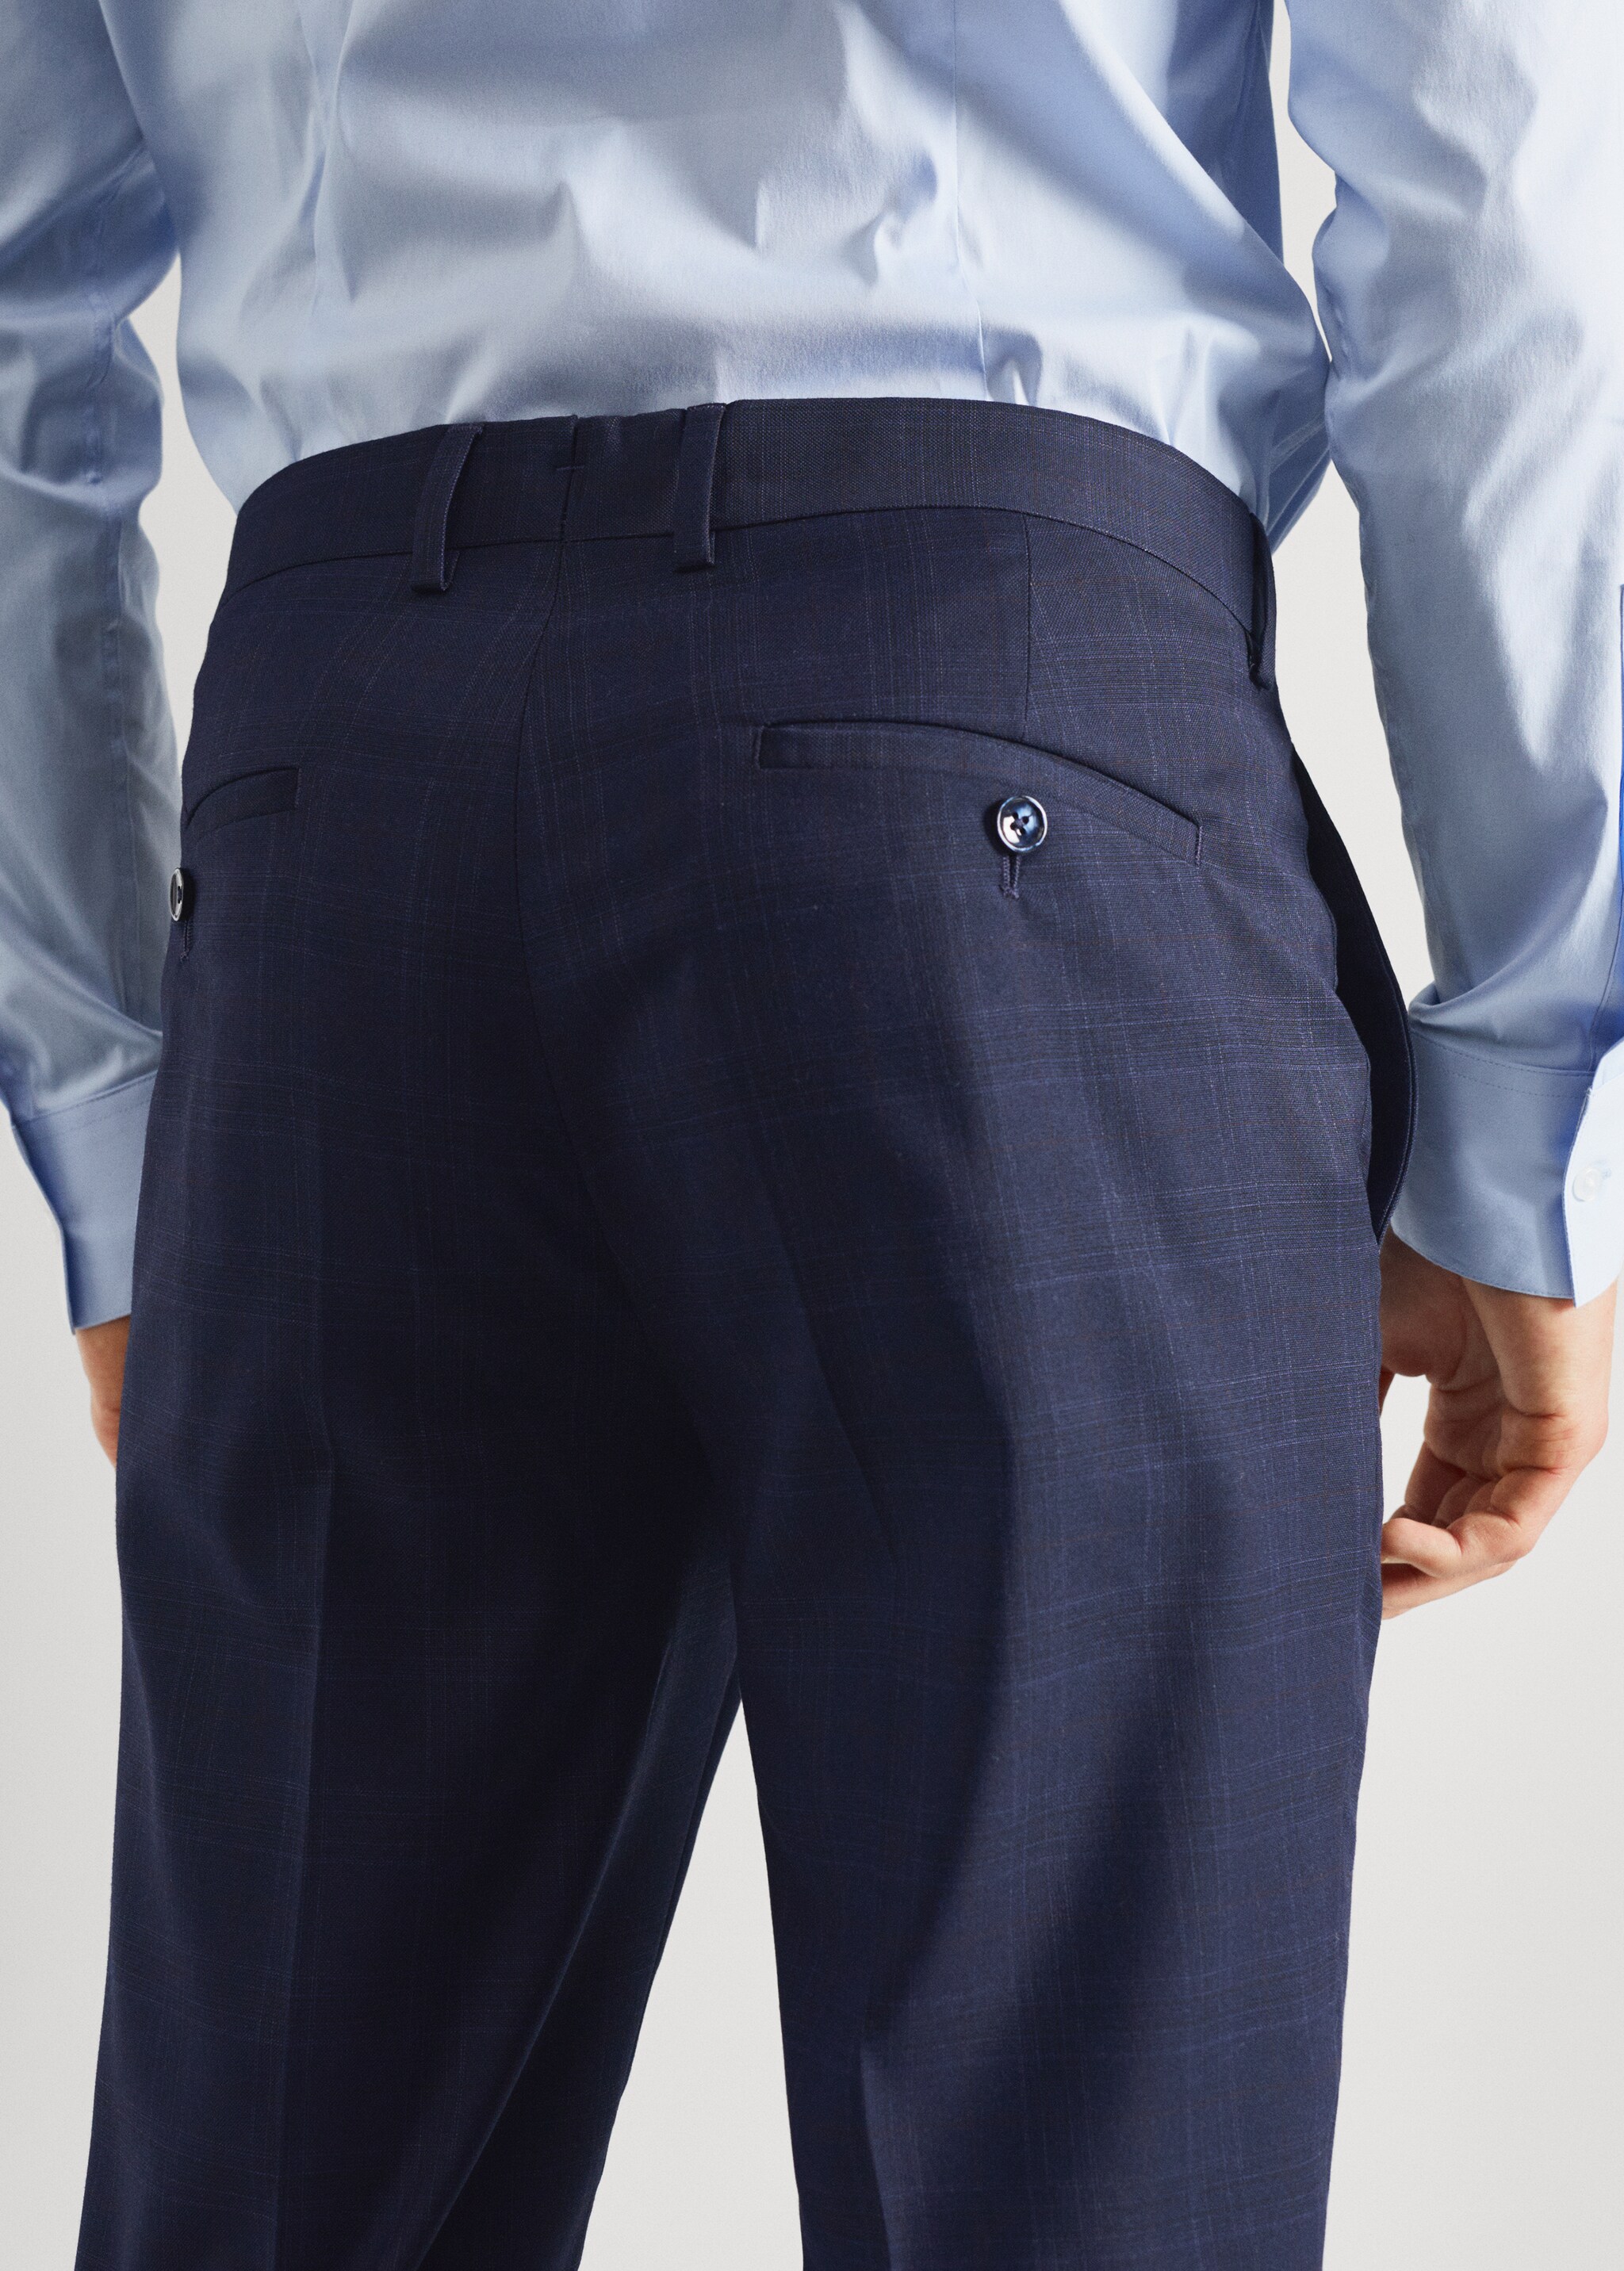 Pantalón traje super slim fit - Detalle del artículo 6